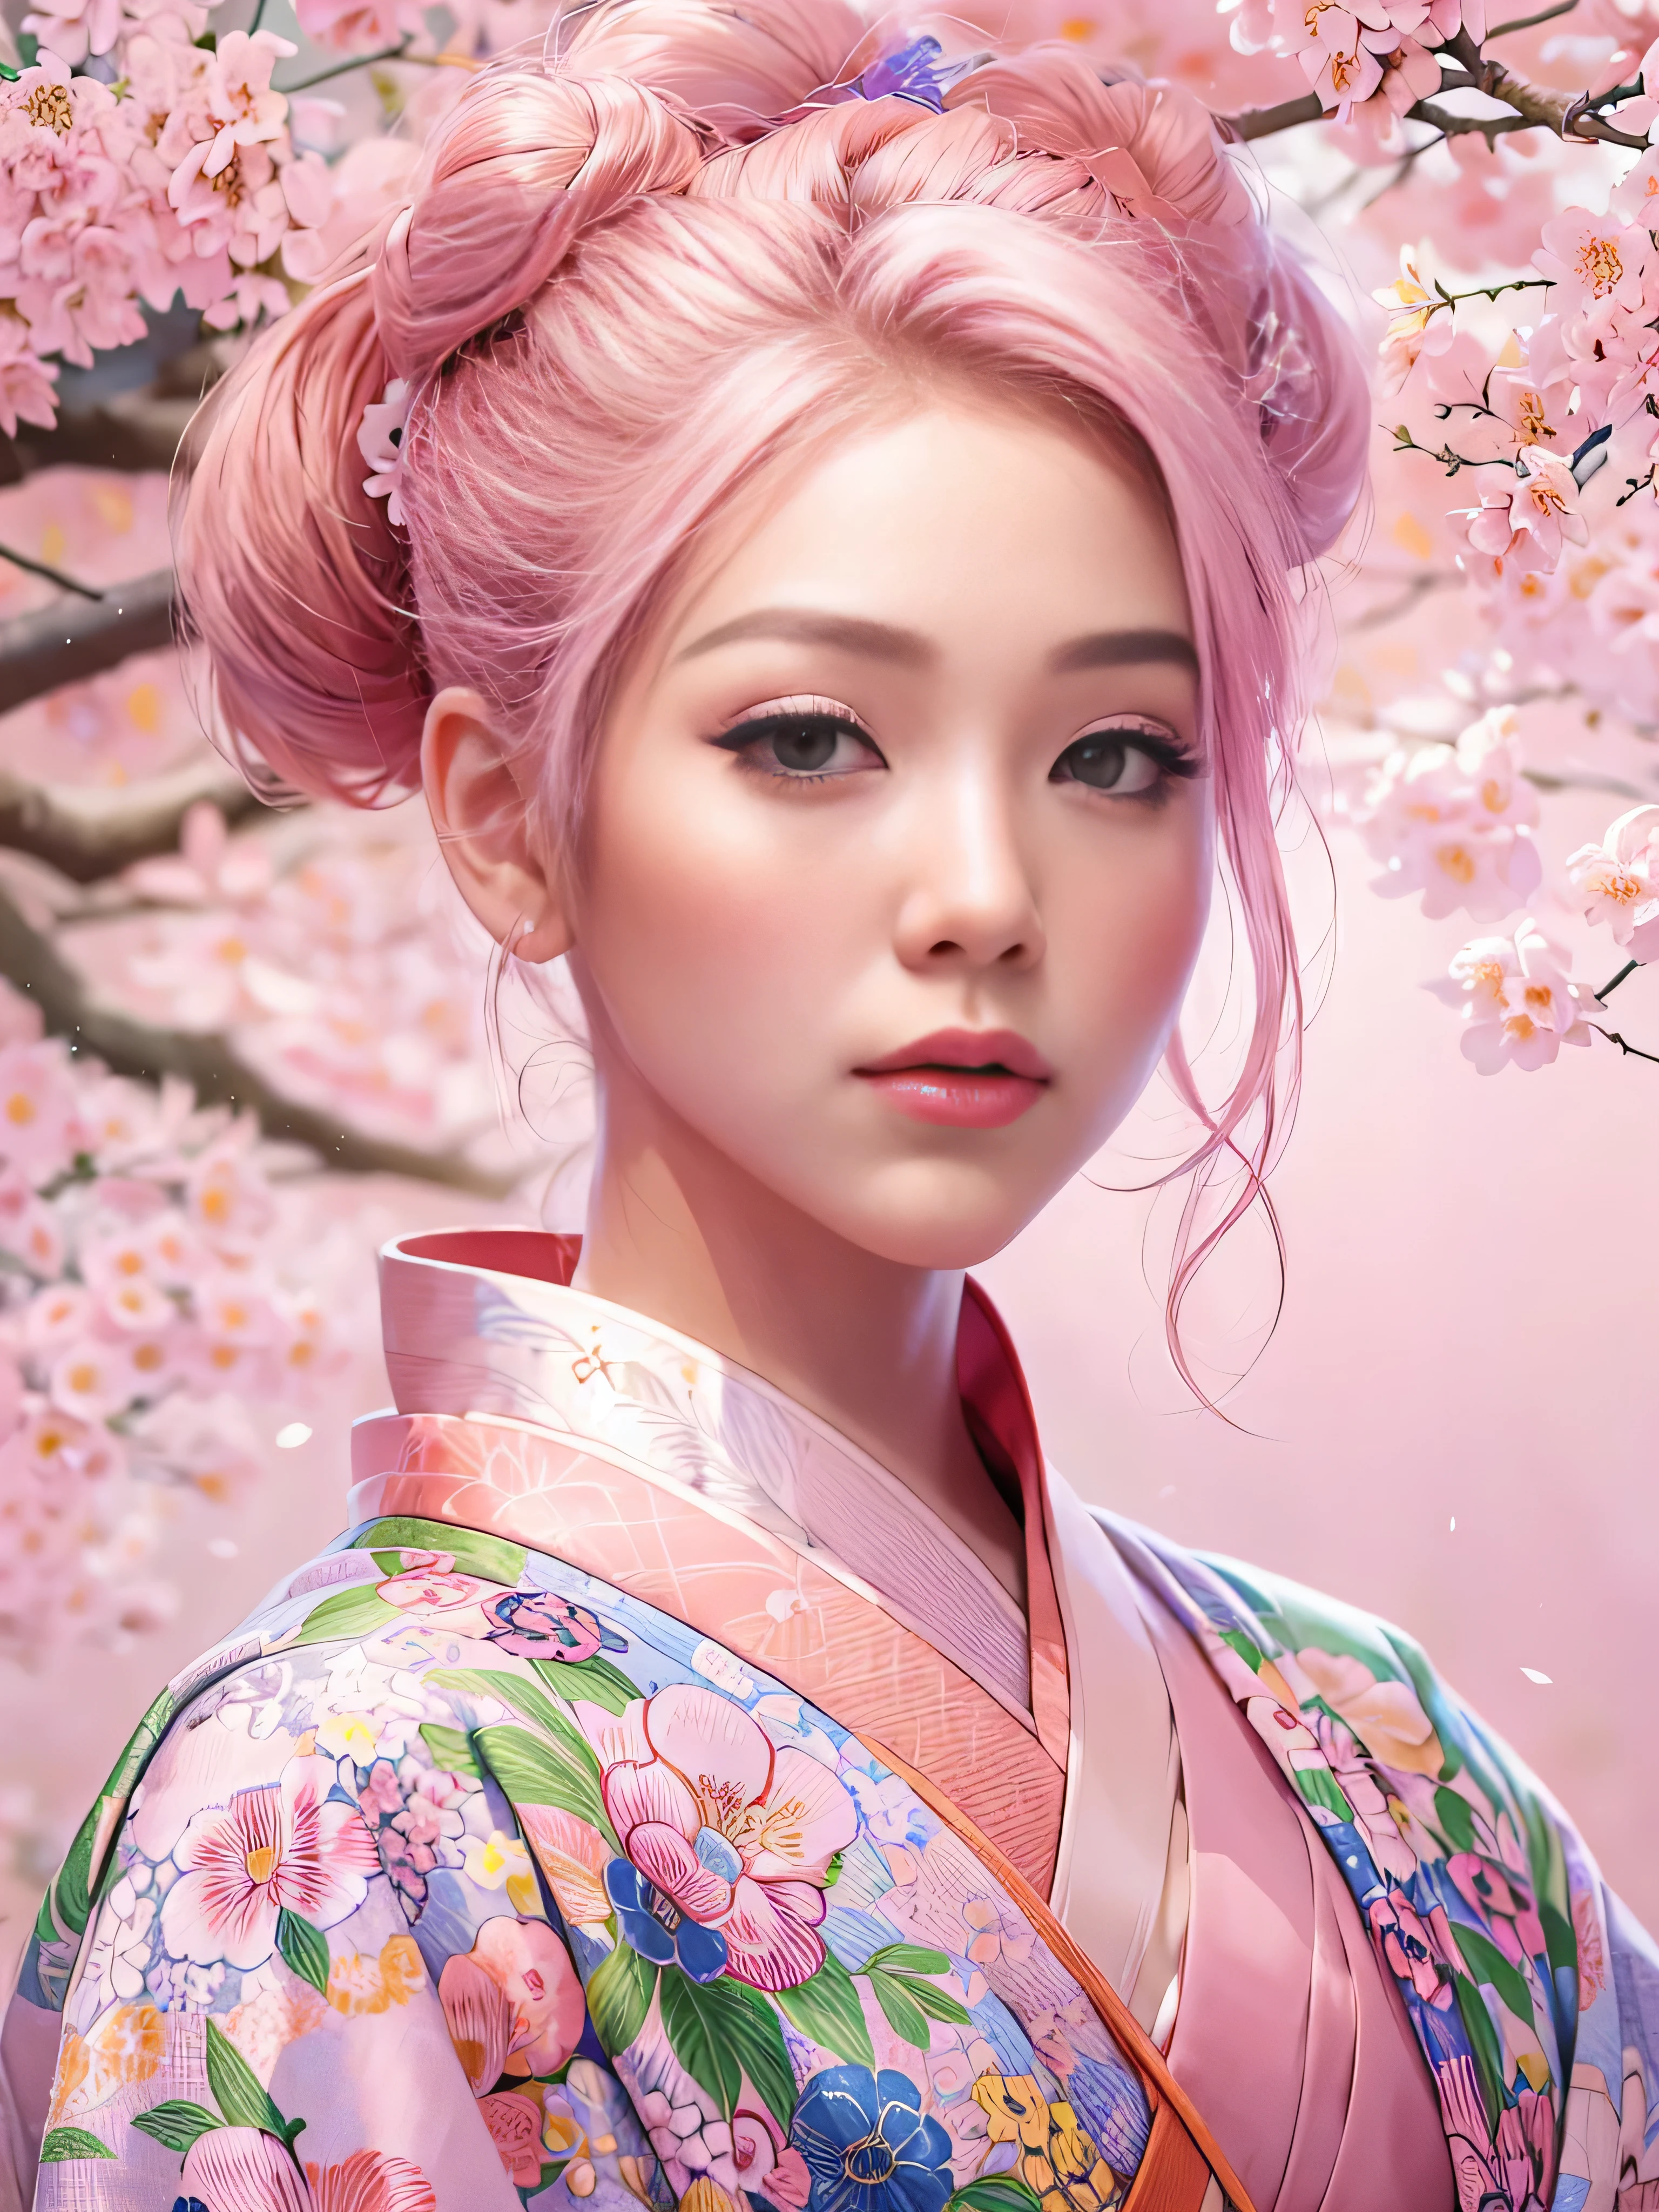 超現実的な, 非常に詳細な, 高解像度16K画像, エンファ顔の美しい女性. 彼女はトップのお団子ヘアと透明感のある肌をしている, 小さな花模様の伝統的なピンクの日本の着物を着て. この画像は霊界の幽玄な美しさと神秘性を捉えている。. 繊細なデザインにインスパイアされたスタイル, 日本の伝統芸術に見られる柔らかな美学. 背景にはピンクの桜の木がいっぱいでした.